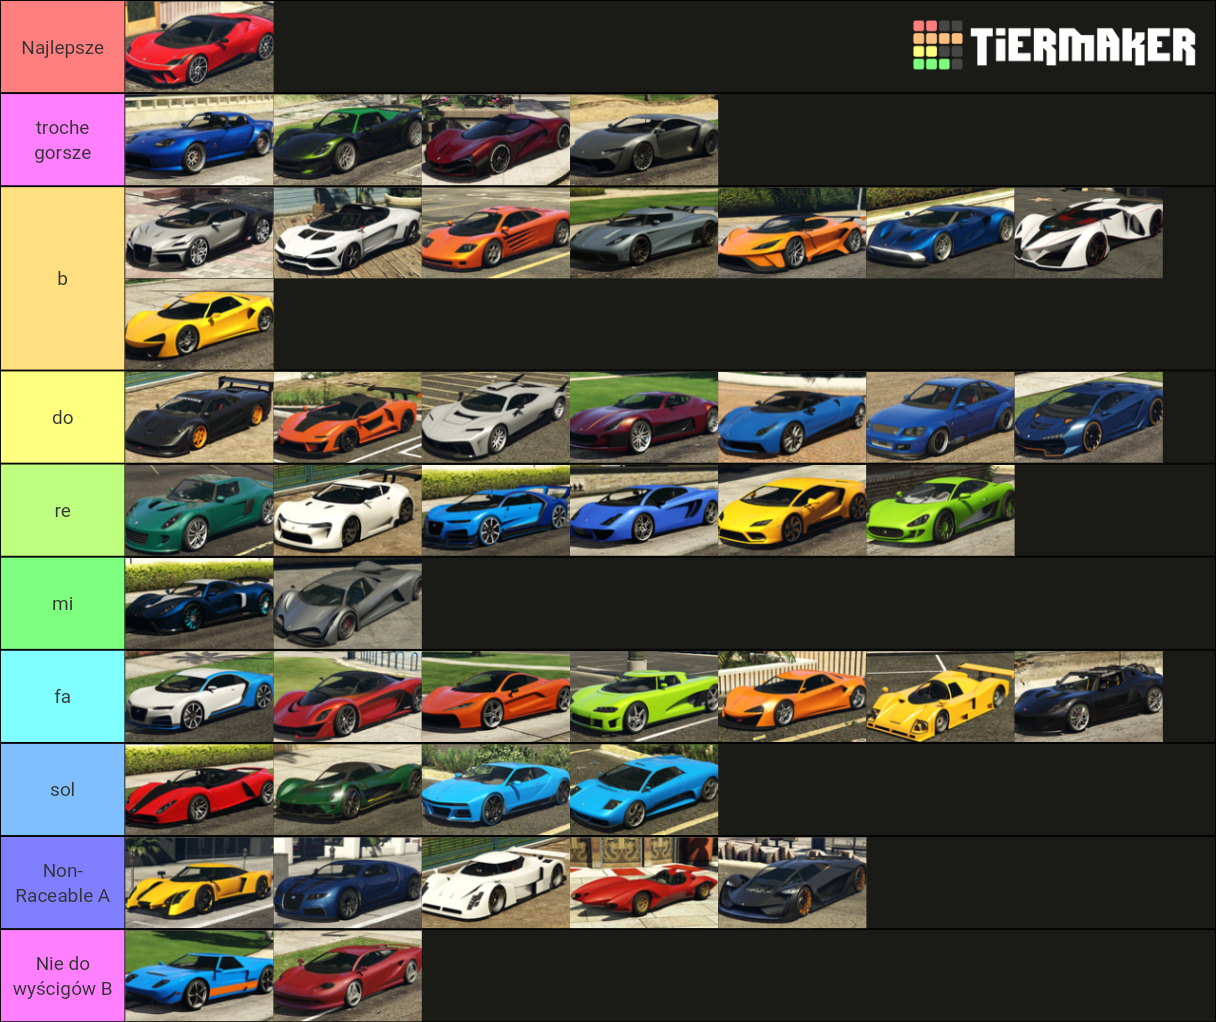 GTA V Supercars Tier List Rankings) TierMaker